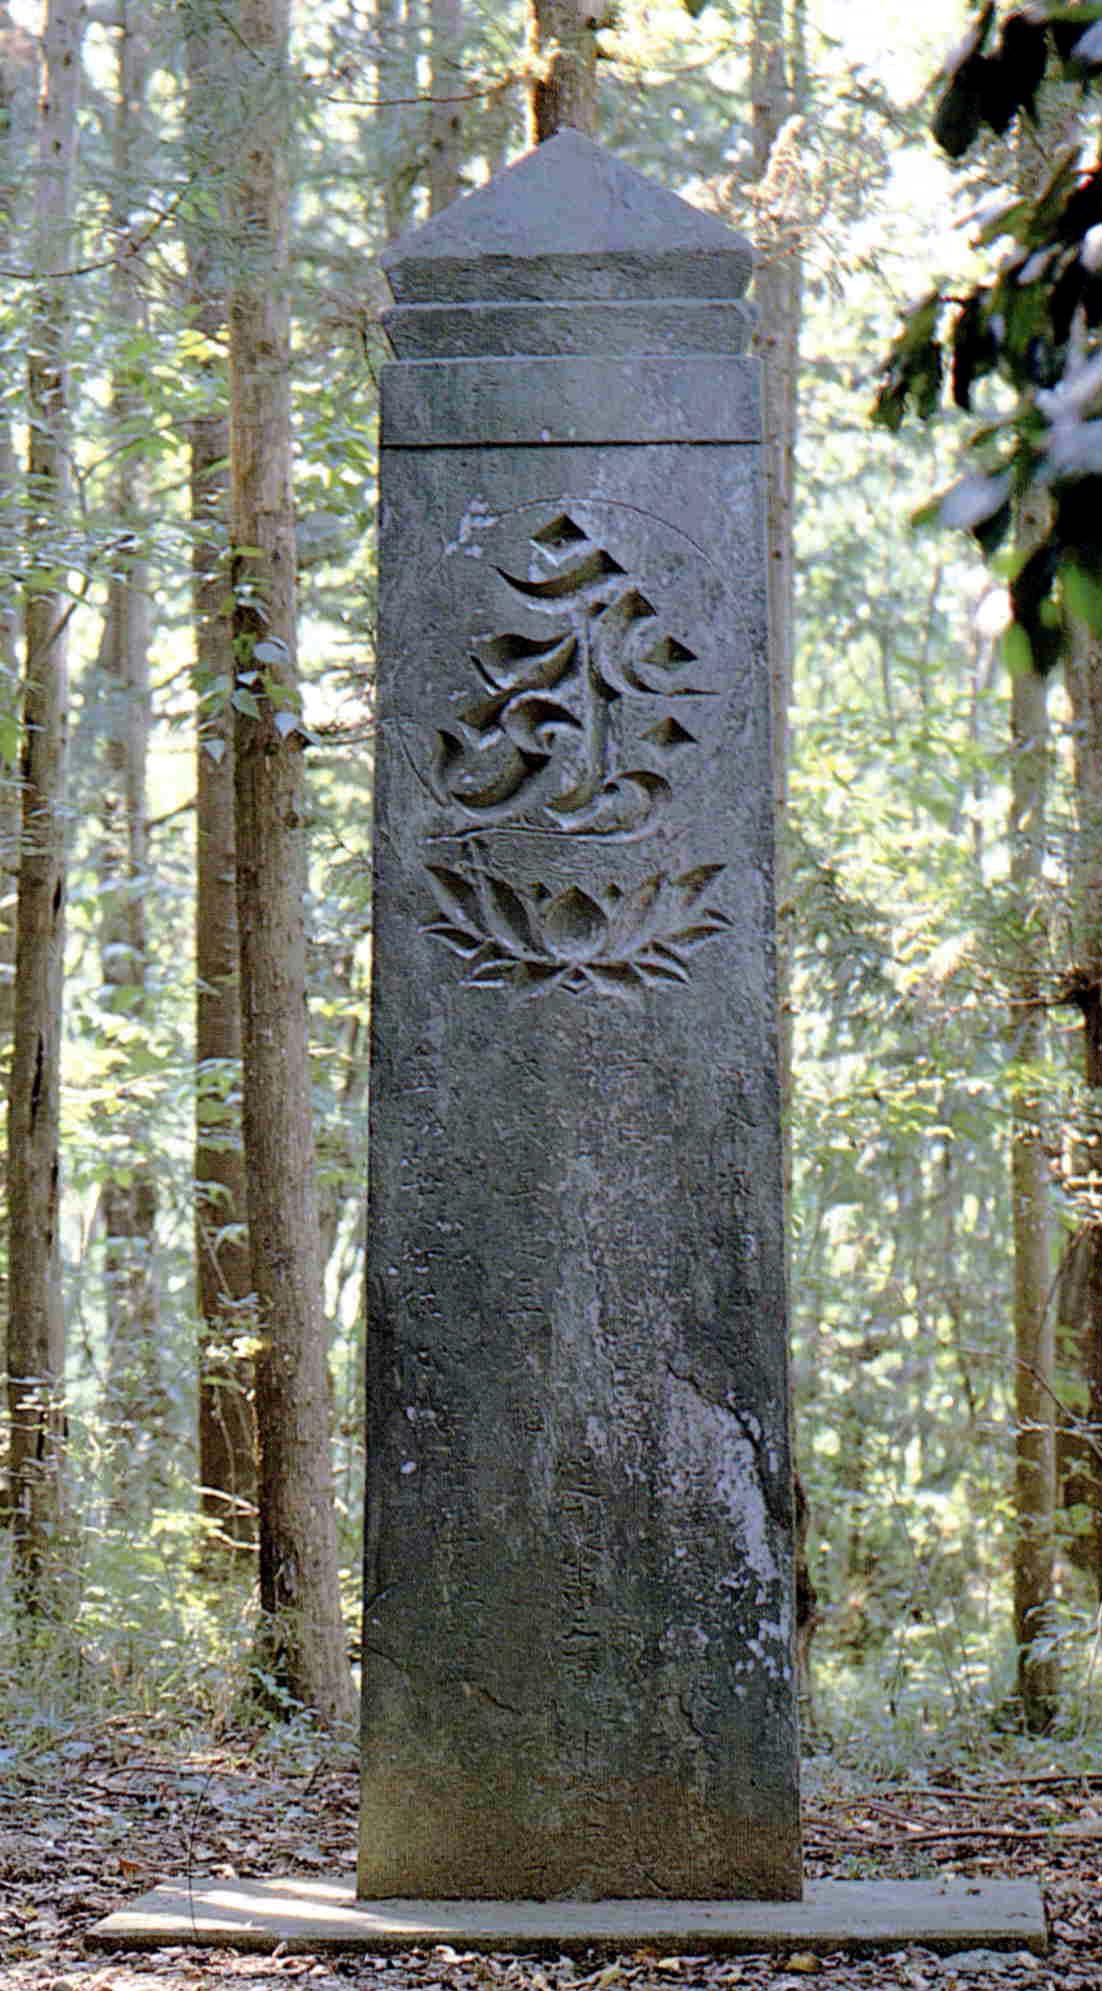 木々の生えた林の中にある高さが3メートル延慶の板碑の写真